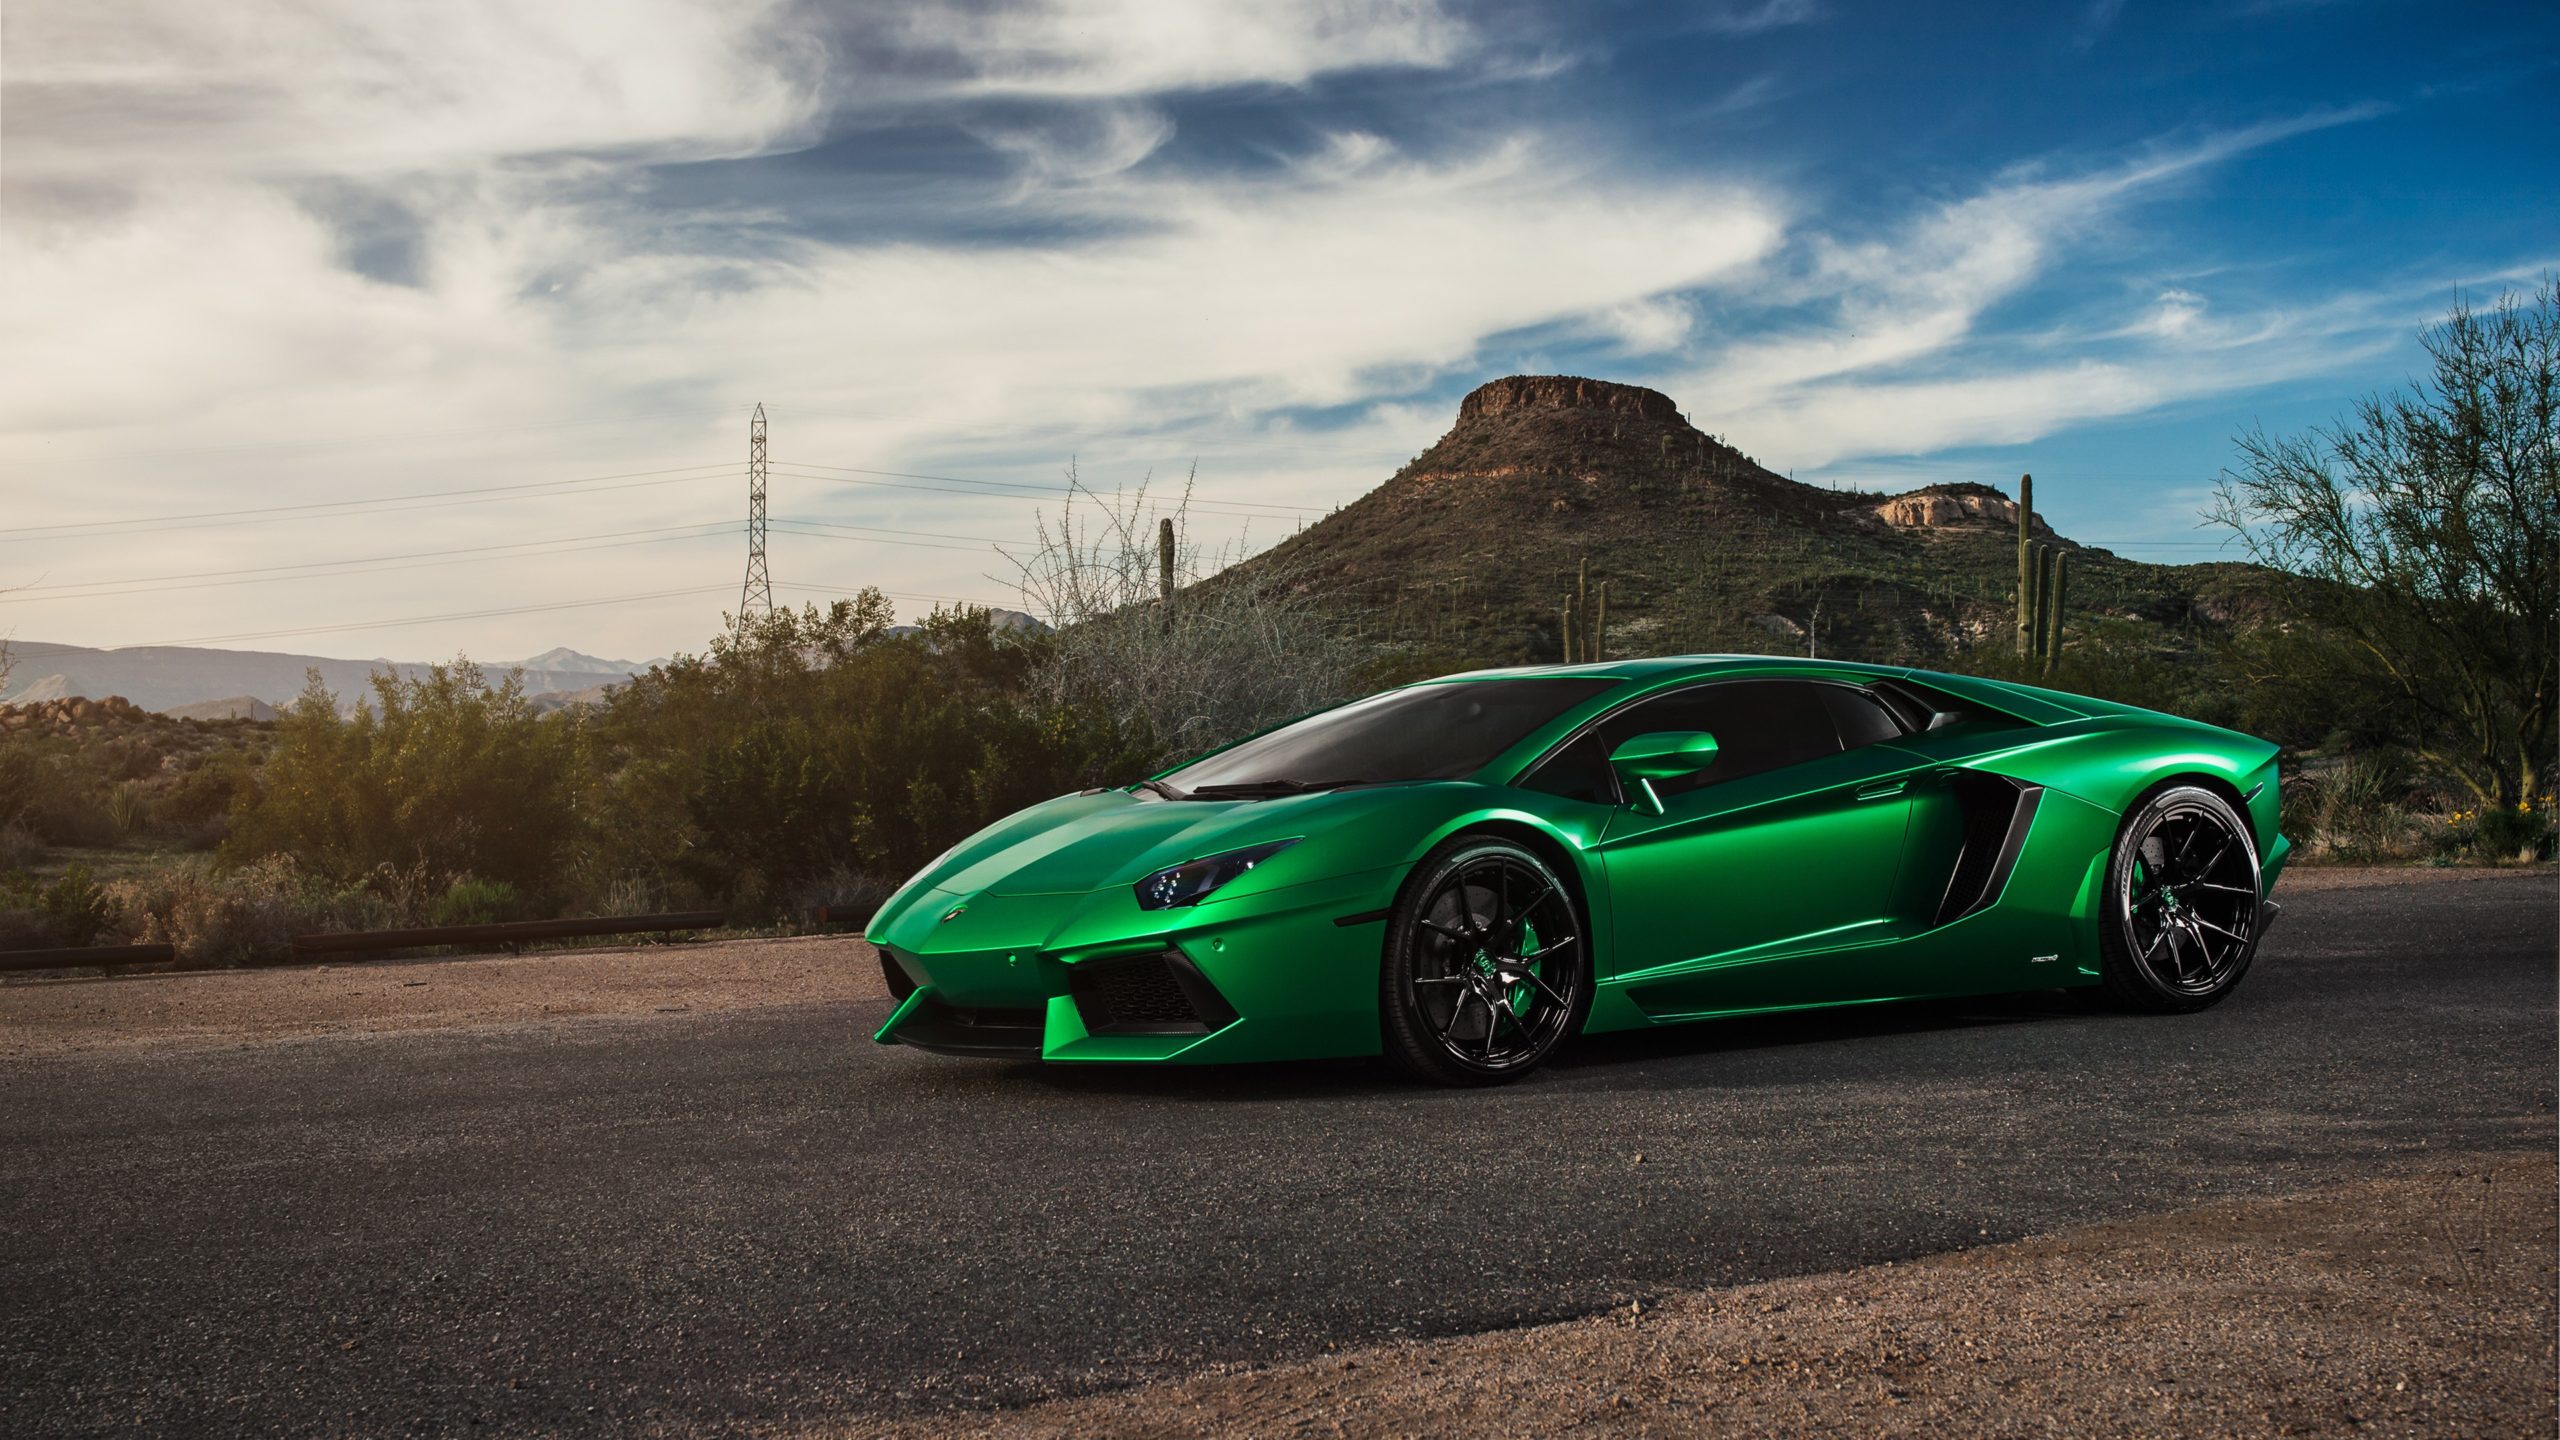 Hình nền siêu xe Lamborghini full HD đẹp nhất - [Kích thước hình ảnh: 2560x1440 px]